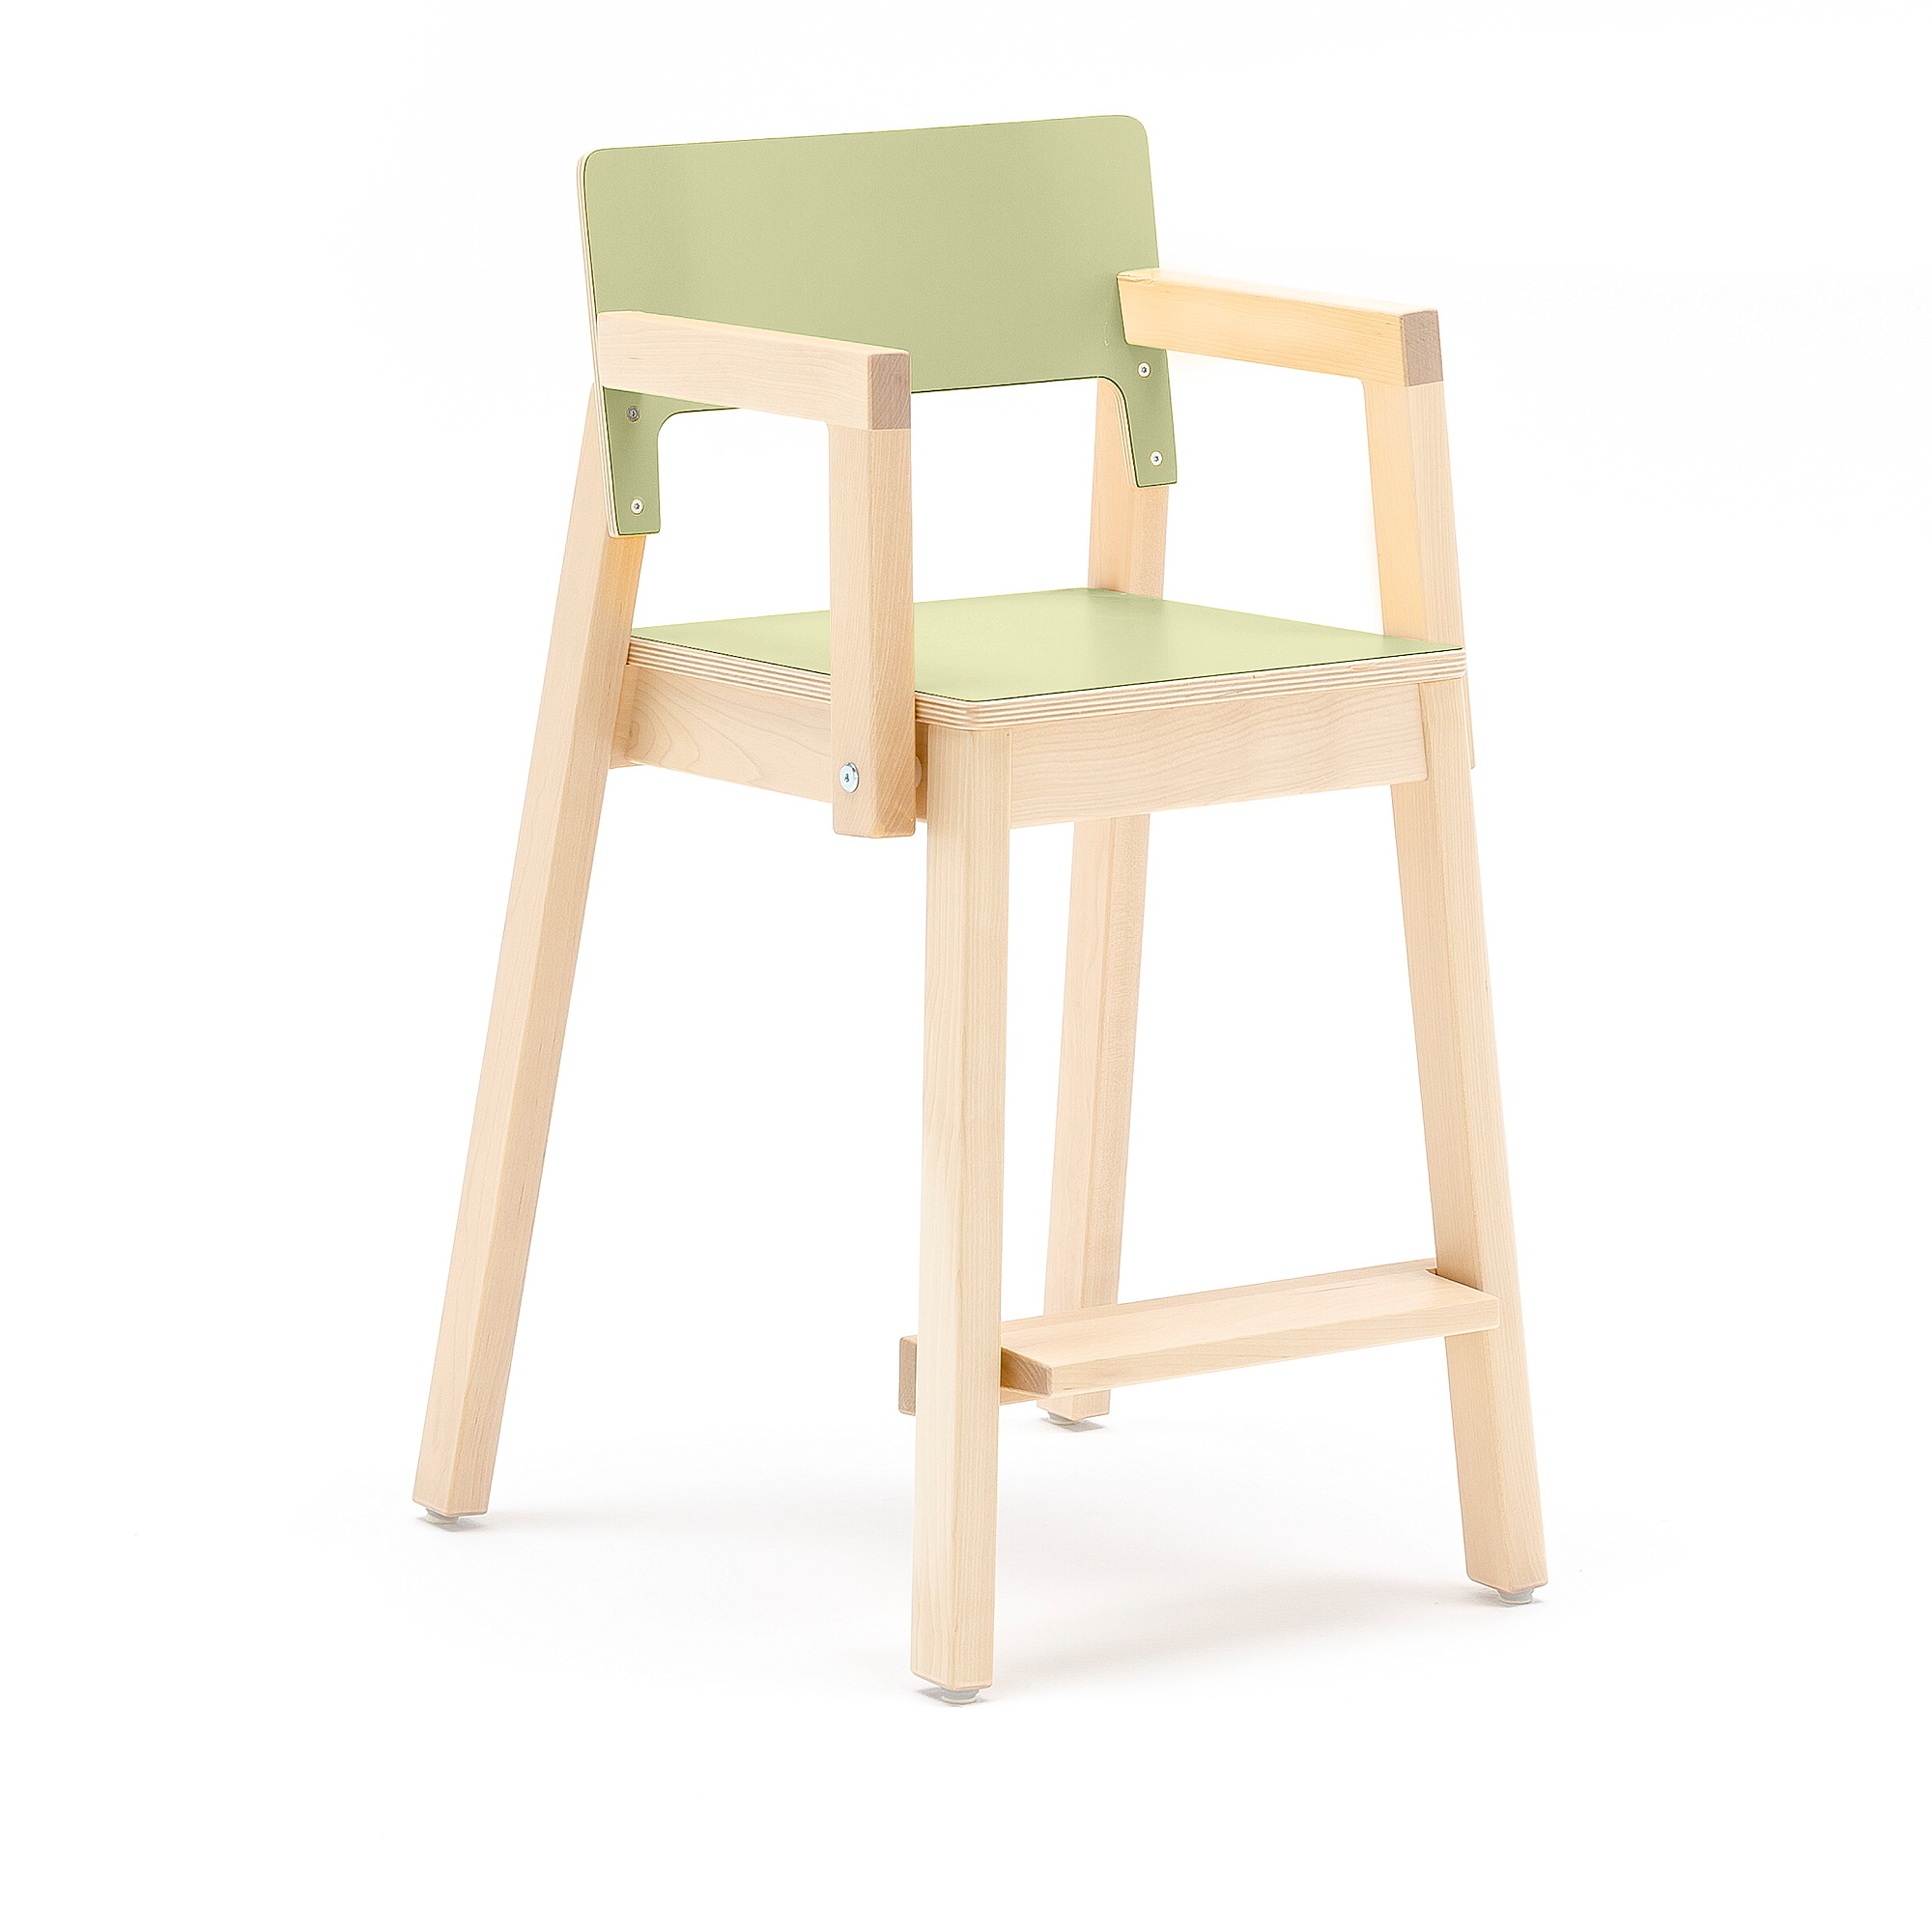 E-shop Vysoká detská stolička LOVE s opierkami rúk, V 500 mm, breza, laminát - zelená